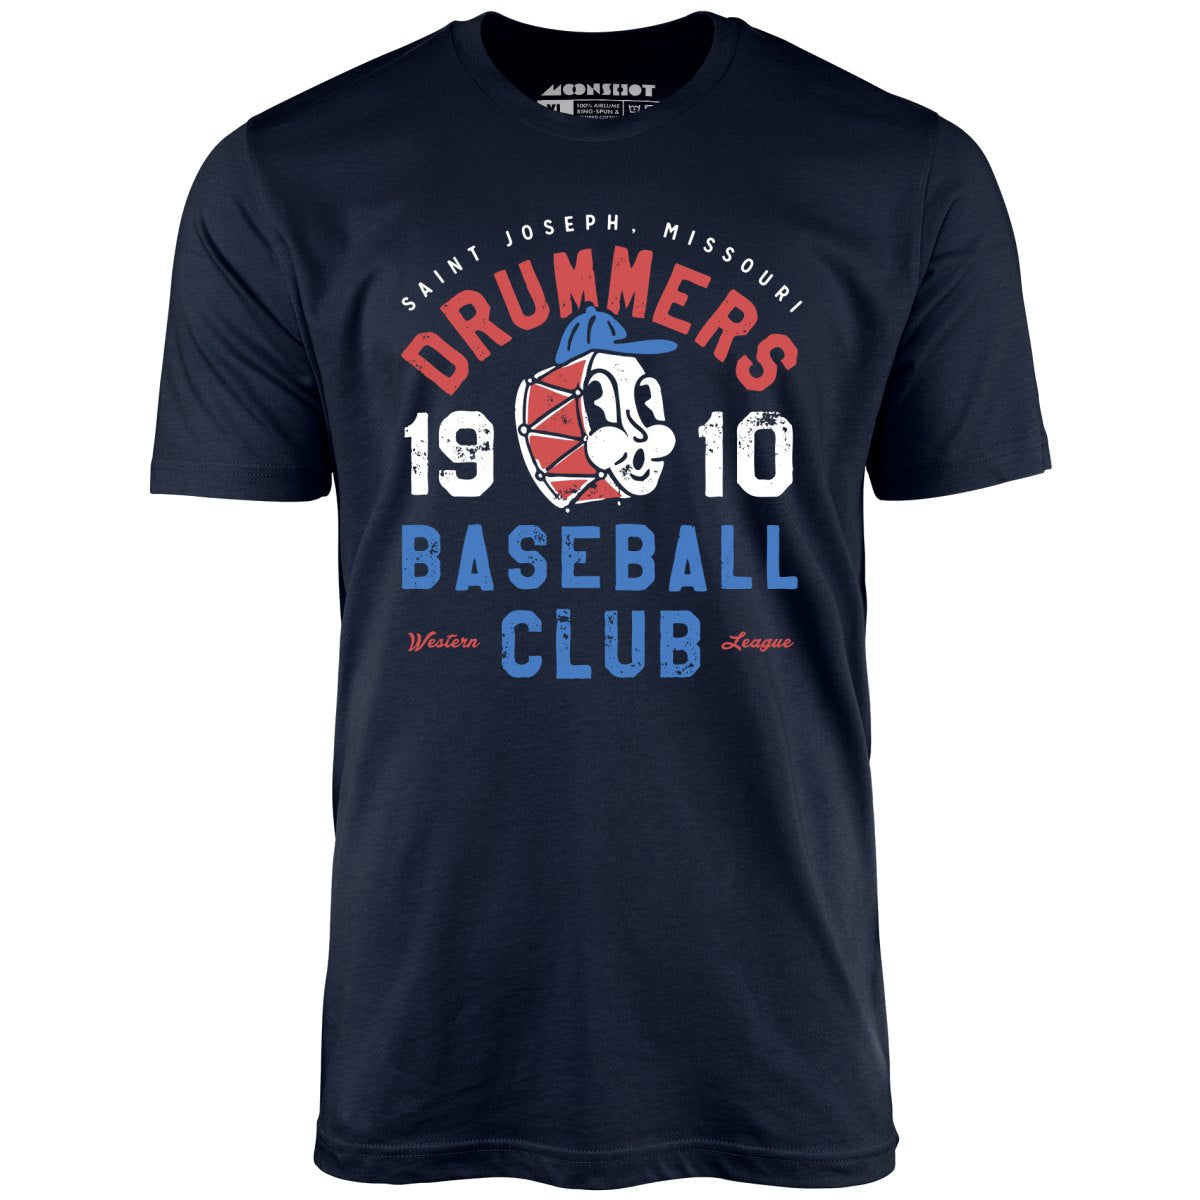 Saint Joseph Drummers - Missouri - Vintage Defunct Baseball Teams - Unisex T-Shirt